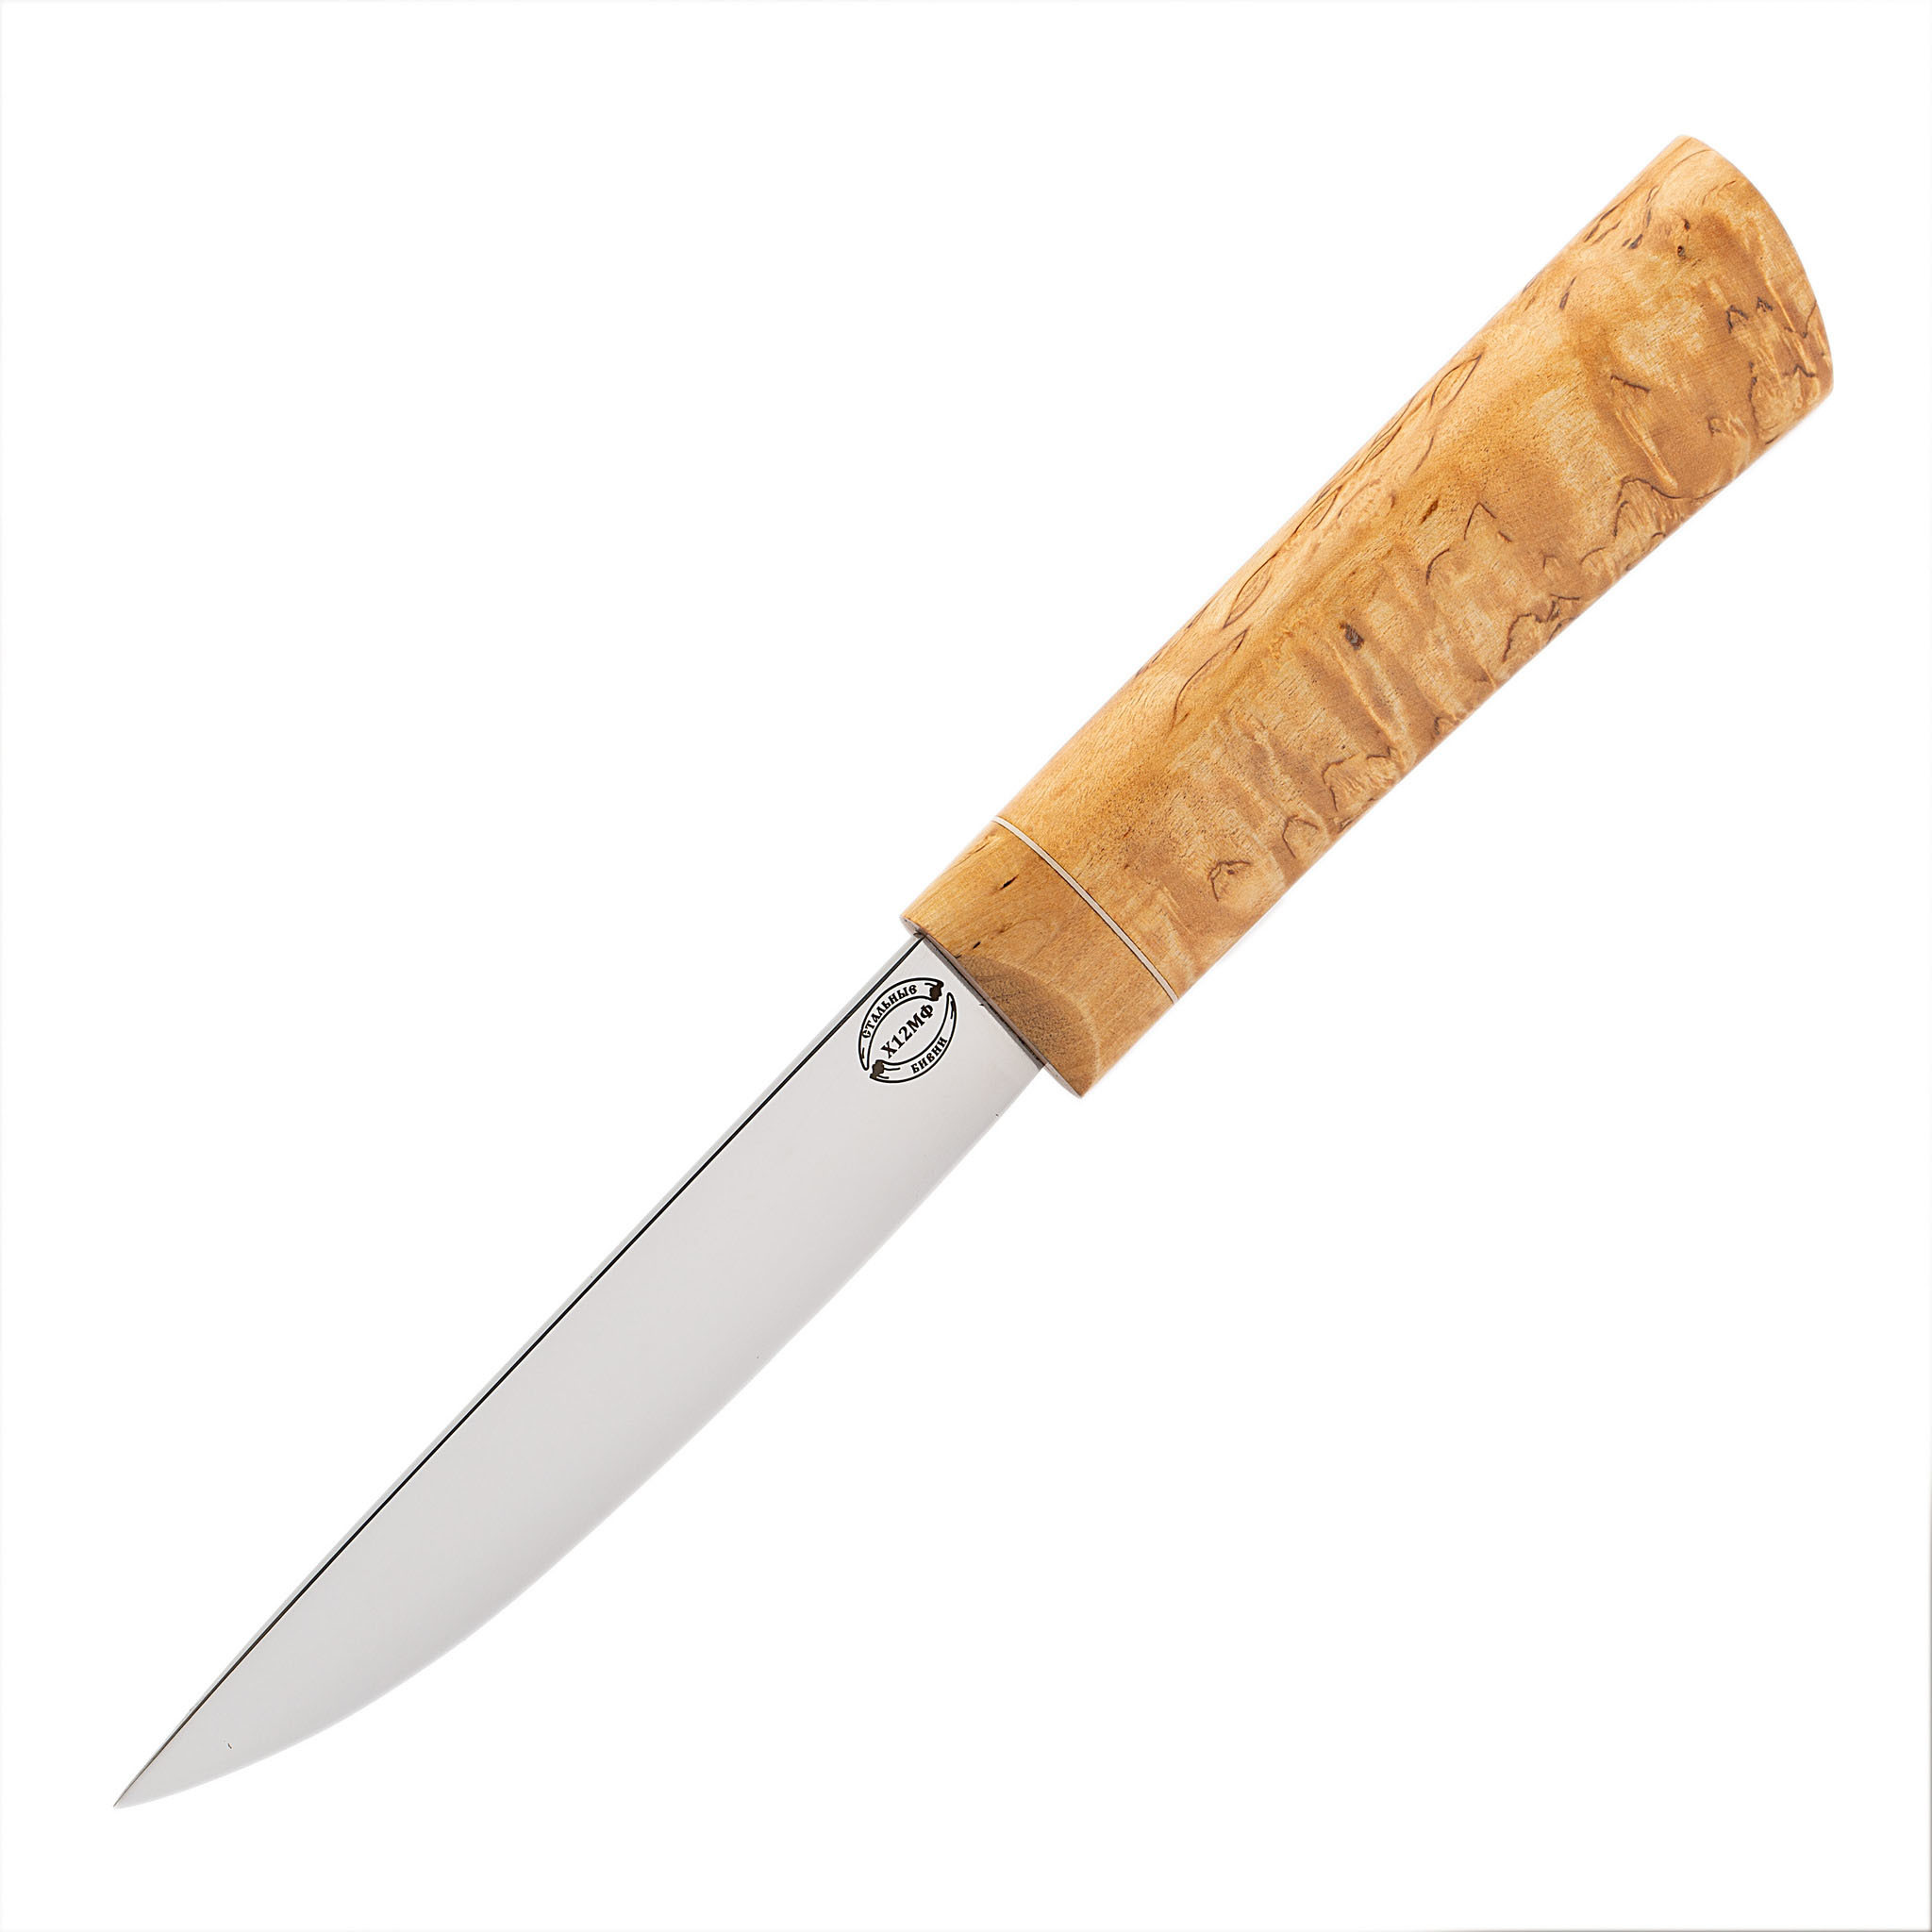 Нож Якутский средний, сталь Х12 МФ, рукоять карельская береза нож якутский средний сталь х12 мф рукоять карельская береза